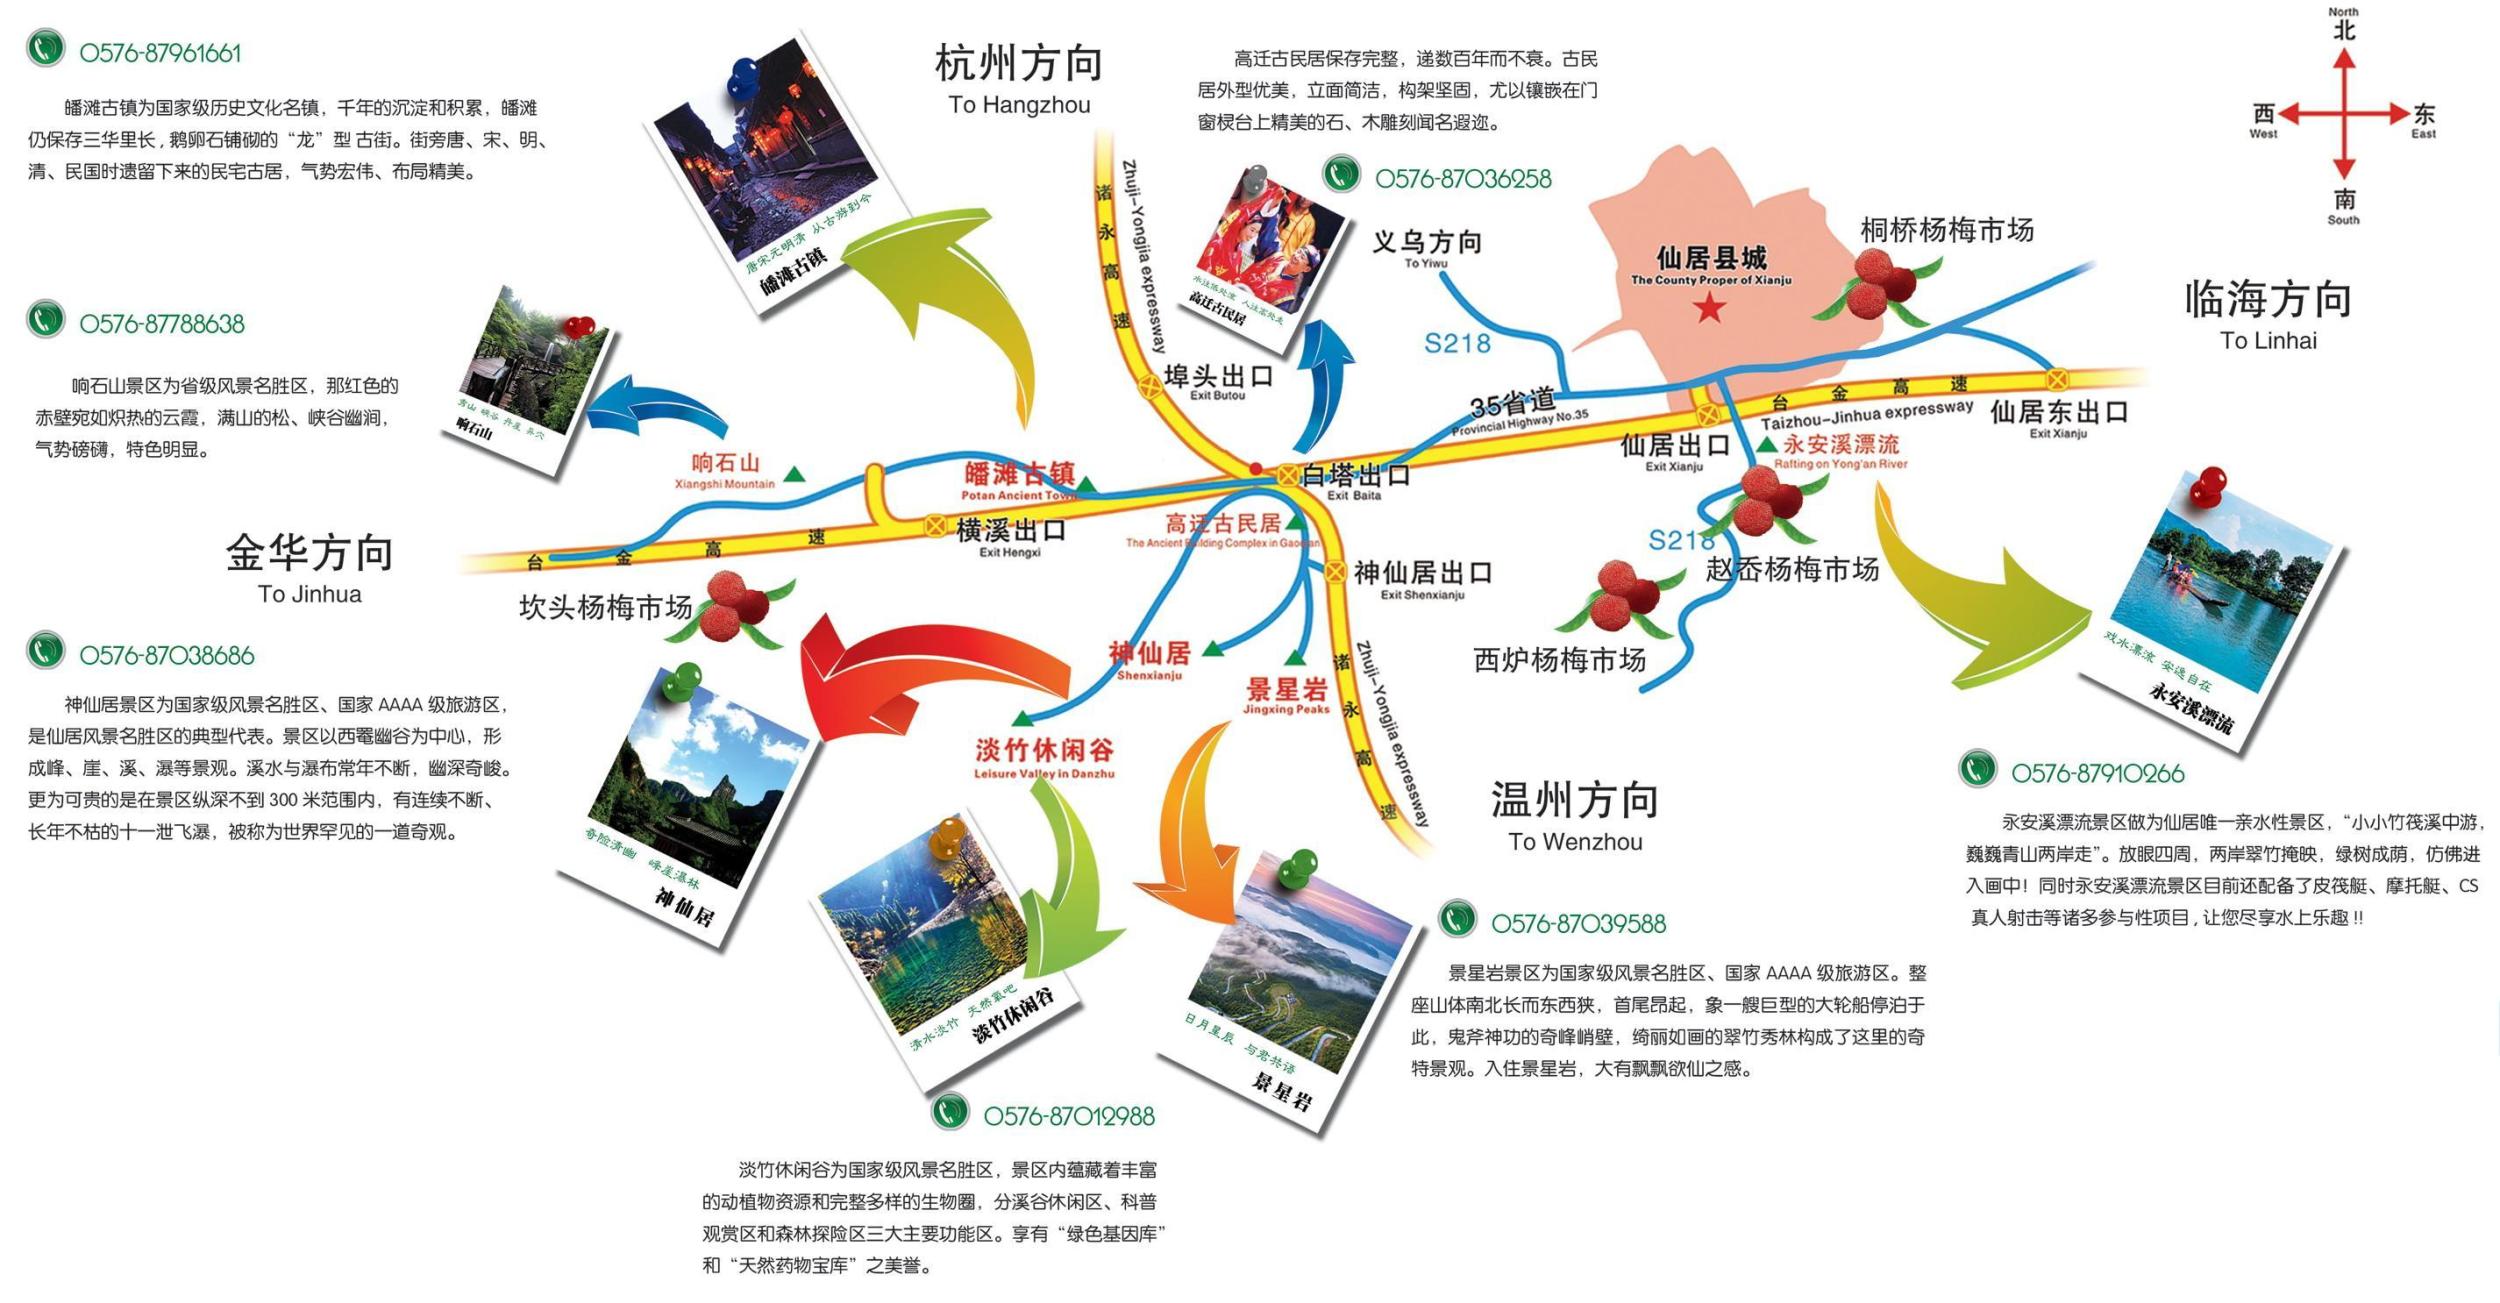 旅游攻略图,仙居 杨梅节 地图 - 温州网图片